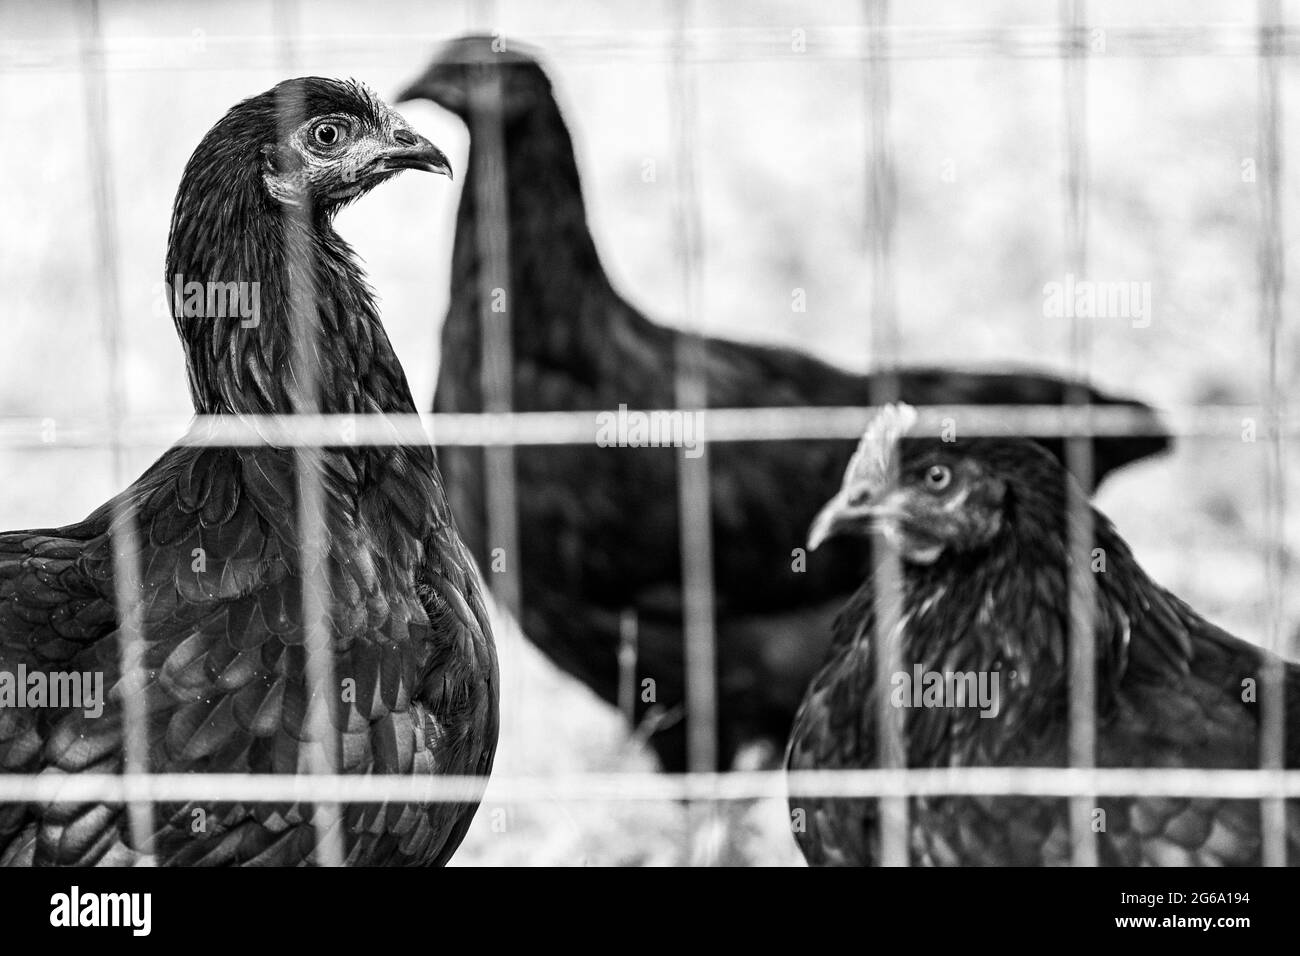 Schwarze französische Marans-Hühner und Jersey Giant Chickens (Gallus domesticus) stehen im Profil in ihrem Hinterhof-Hühnerstall. Stockfoto